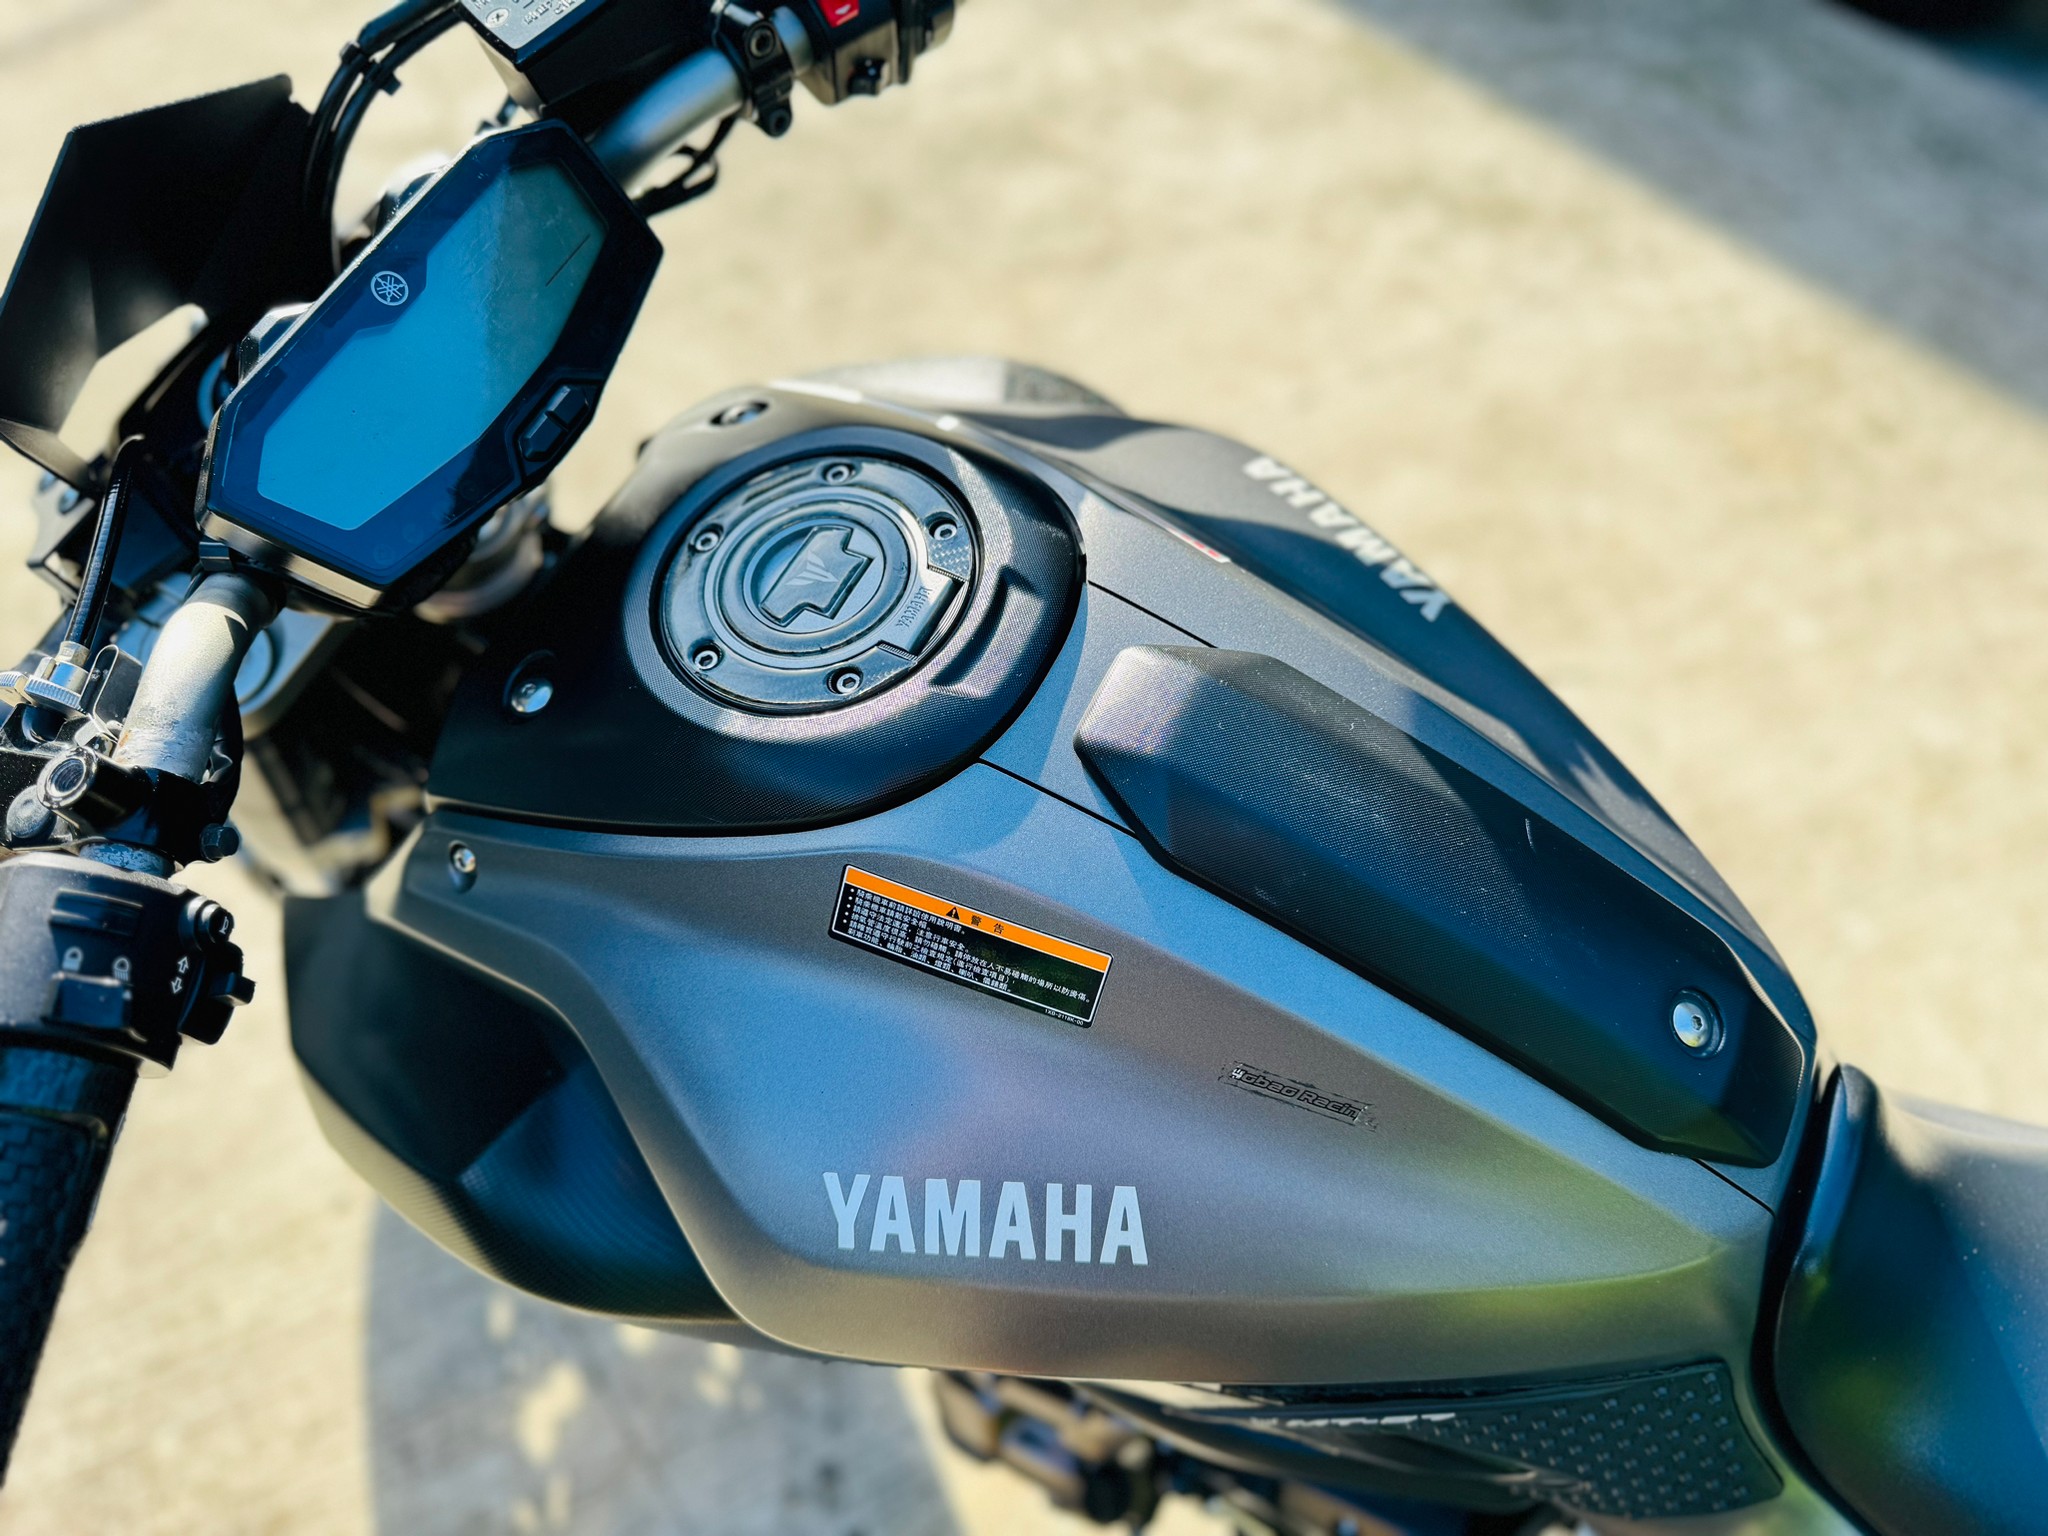 YAMAHA MT-07 - 中古/二手車出售中 Yamaha MT-07 abs 雙缸紅牌入門 | 摩托販